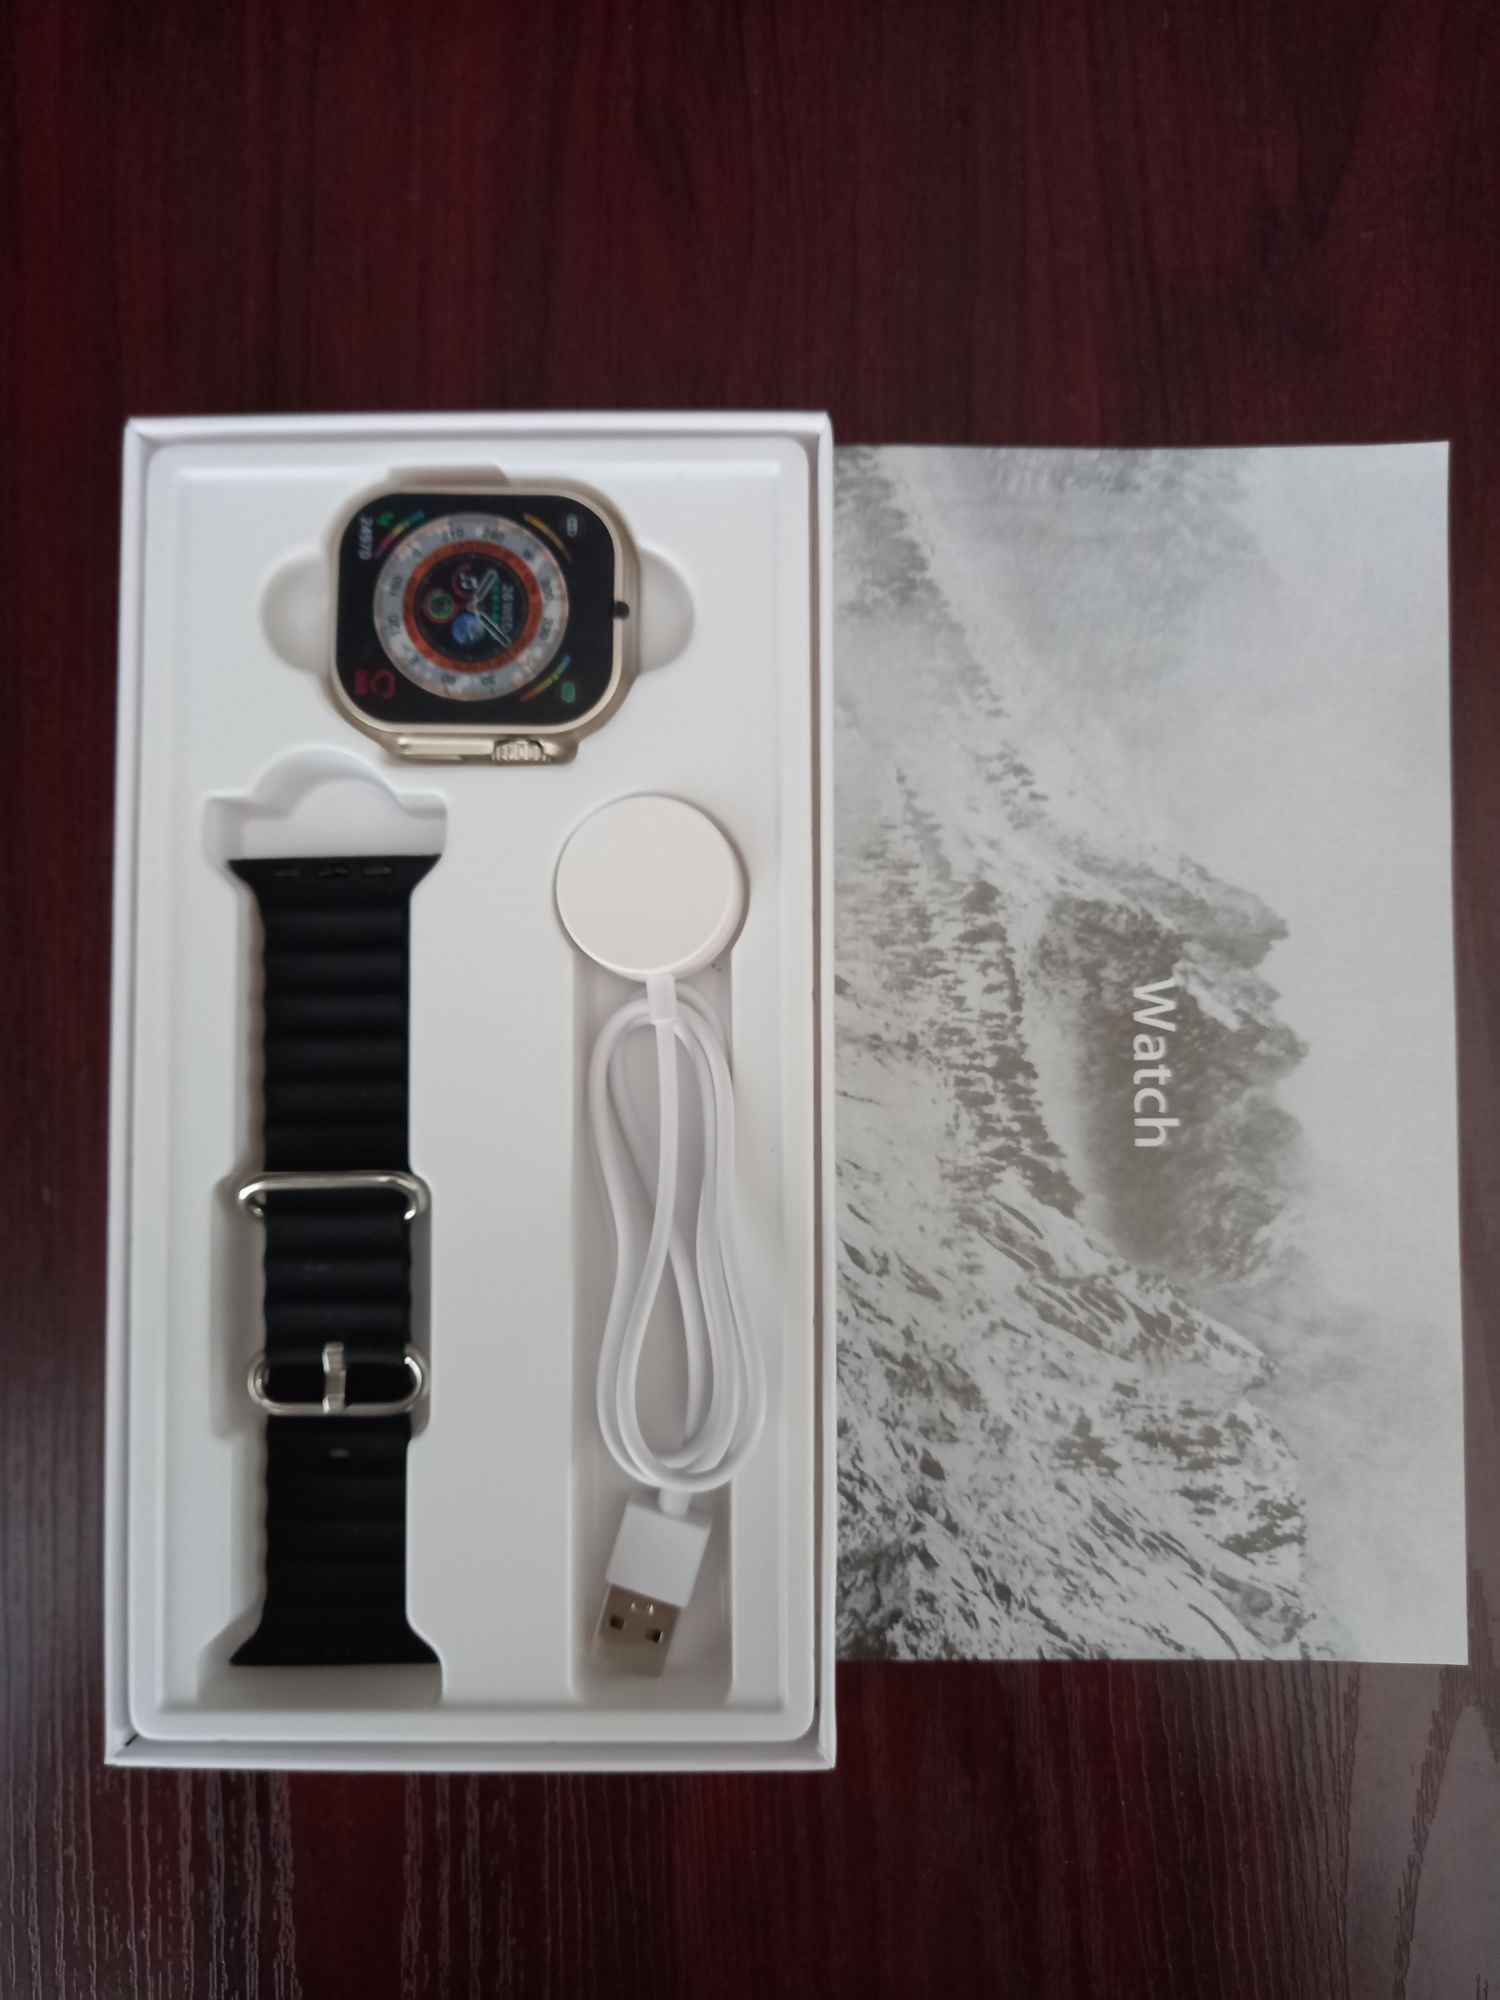 S 8 Ultra Max yangi smart watch